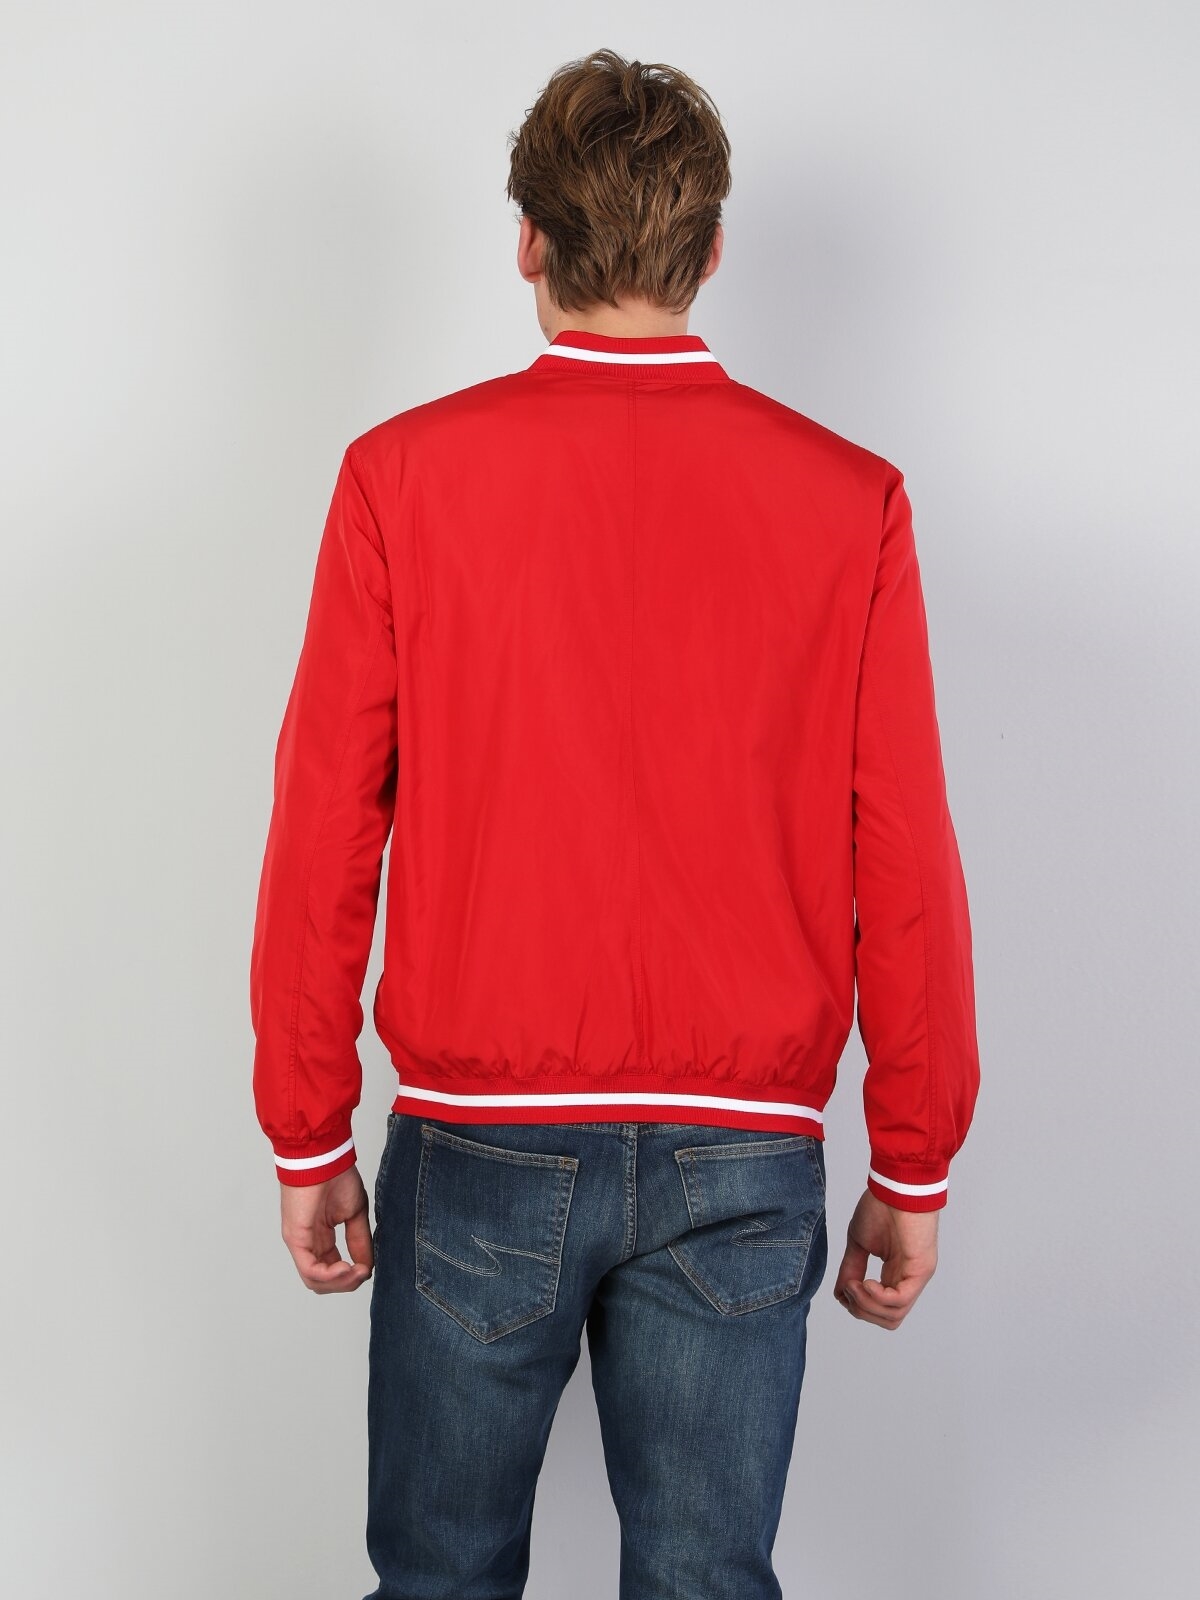 Показати інформацію про Куртка Чоловіча Червона Класичного Крою Cl1048172